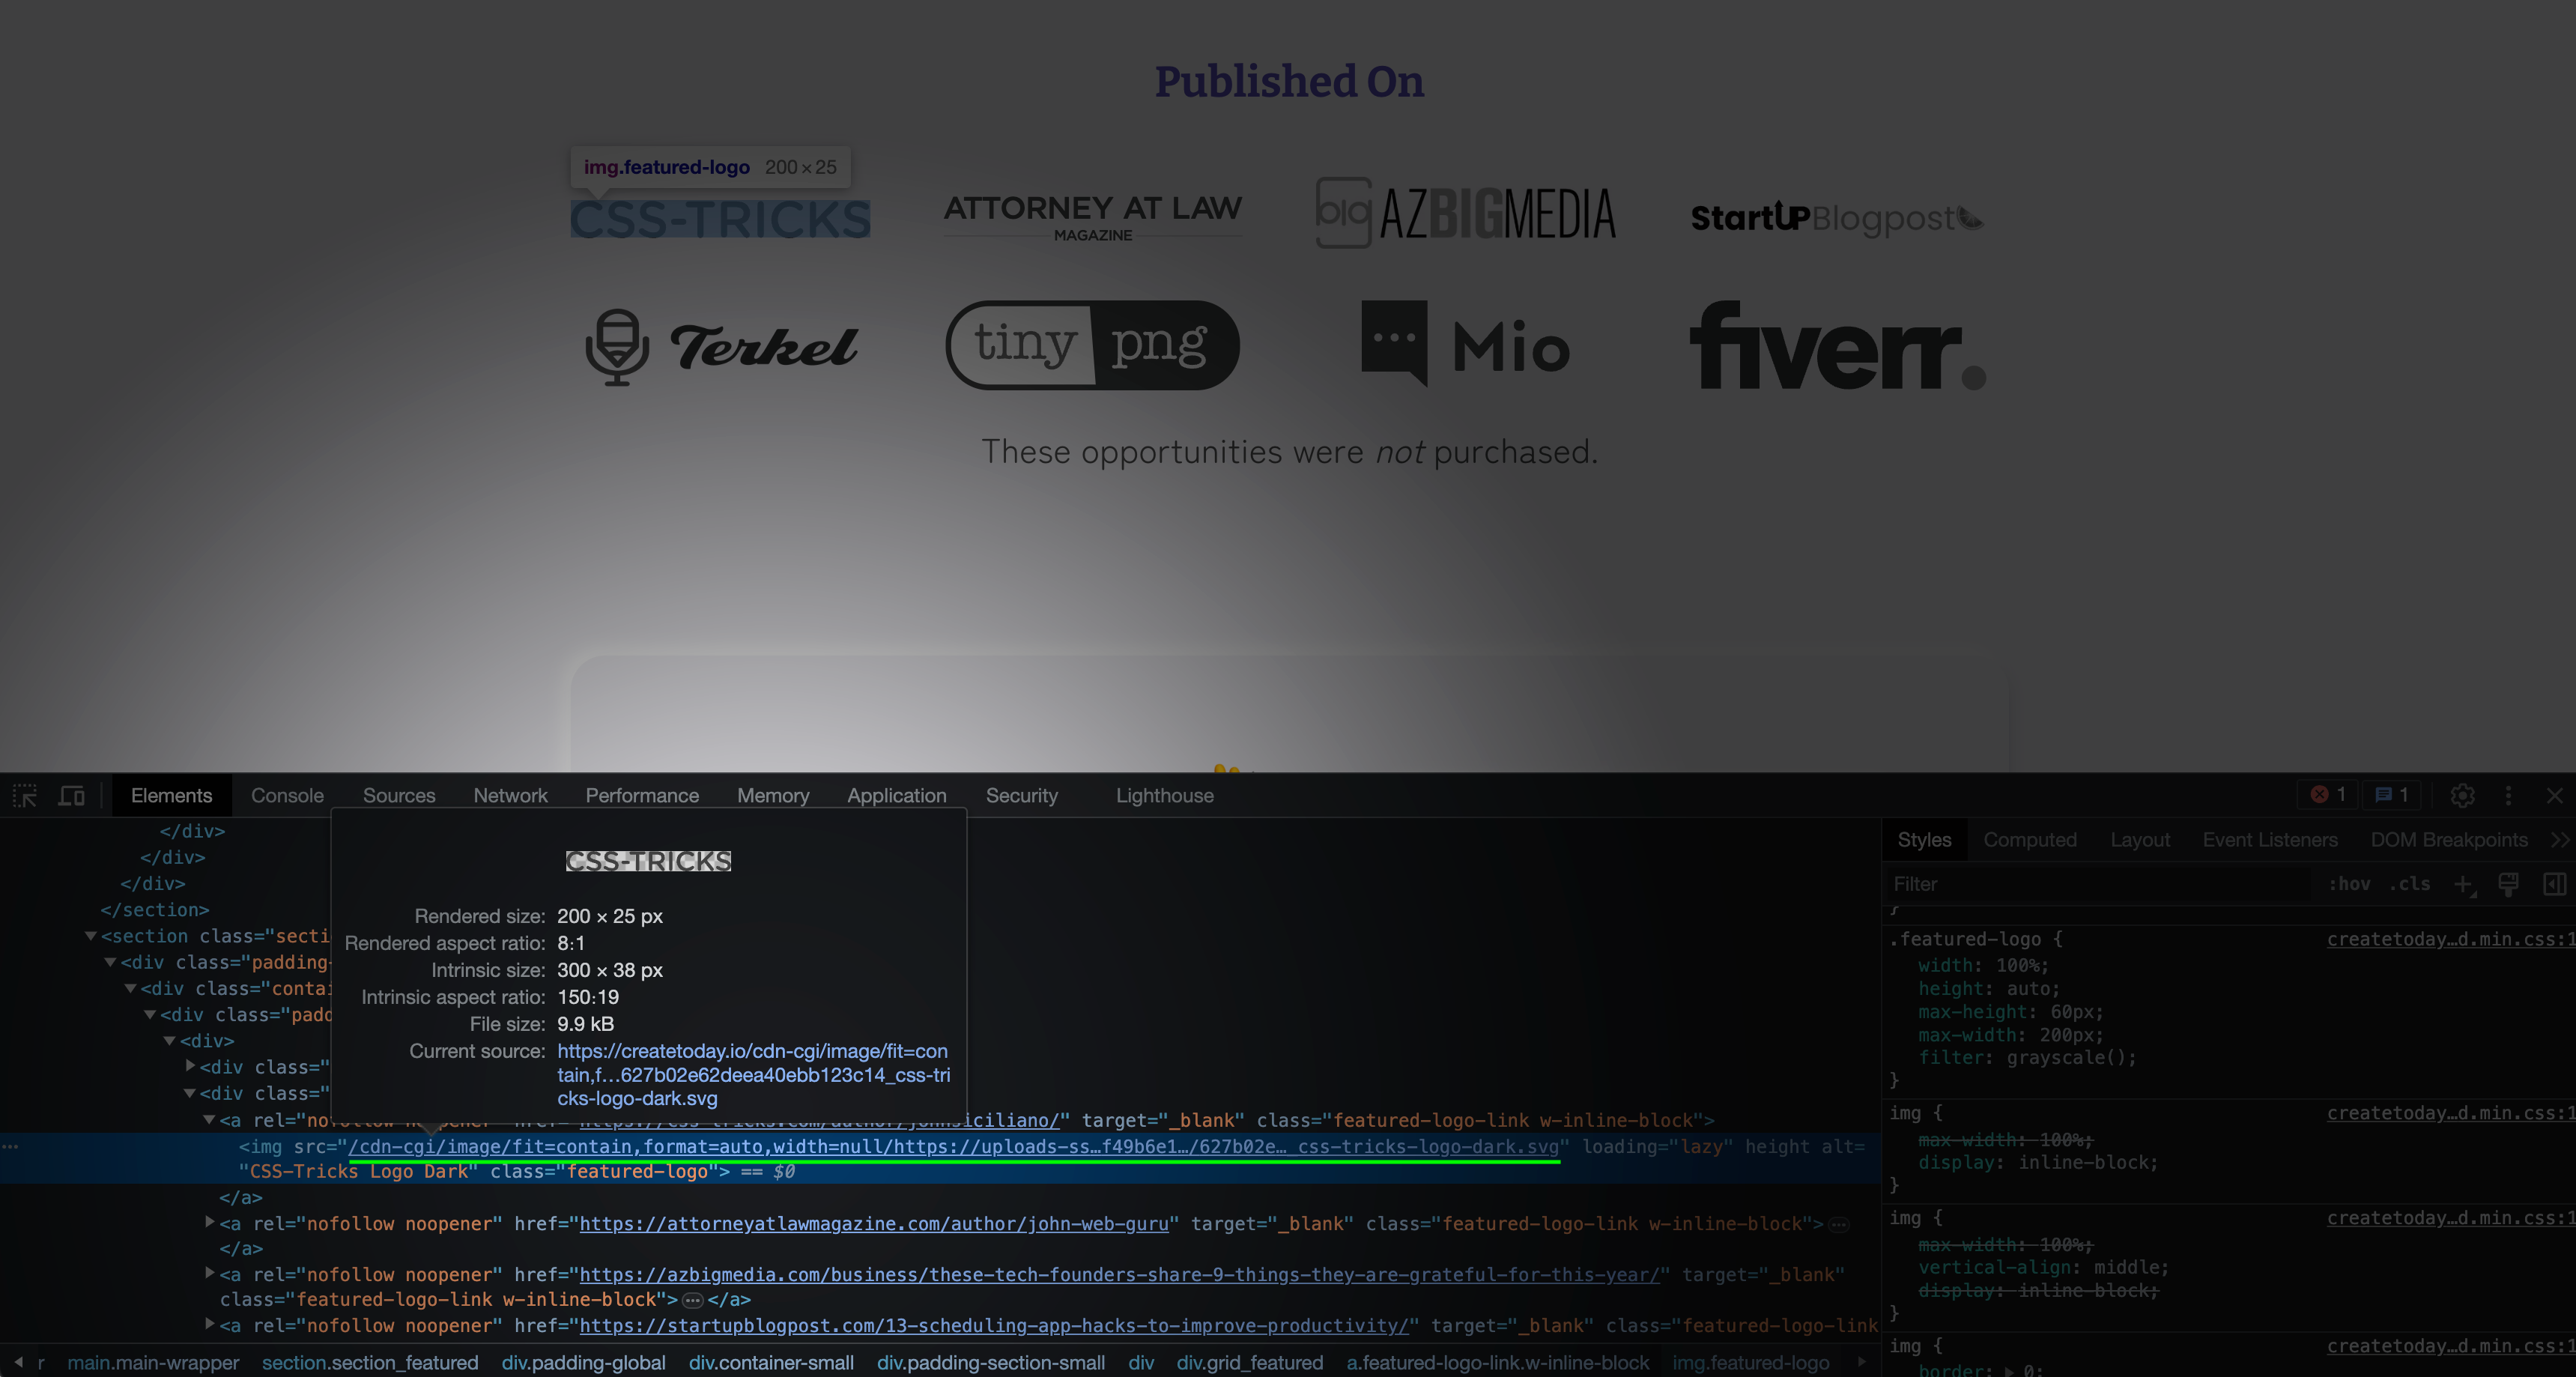 Webflow site using Cloudflare Image Resizing